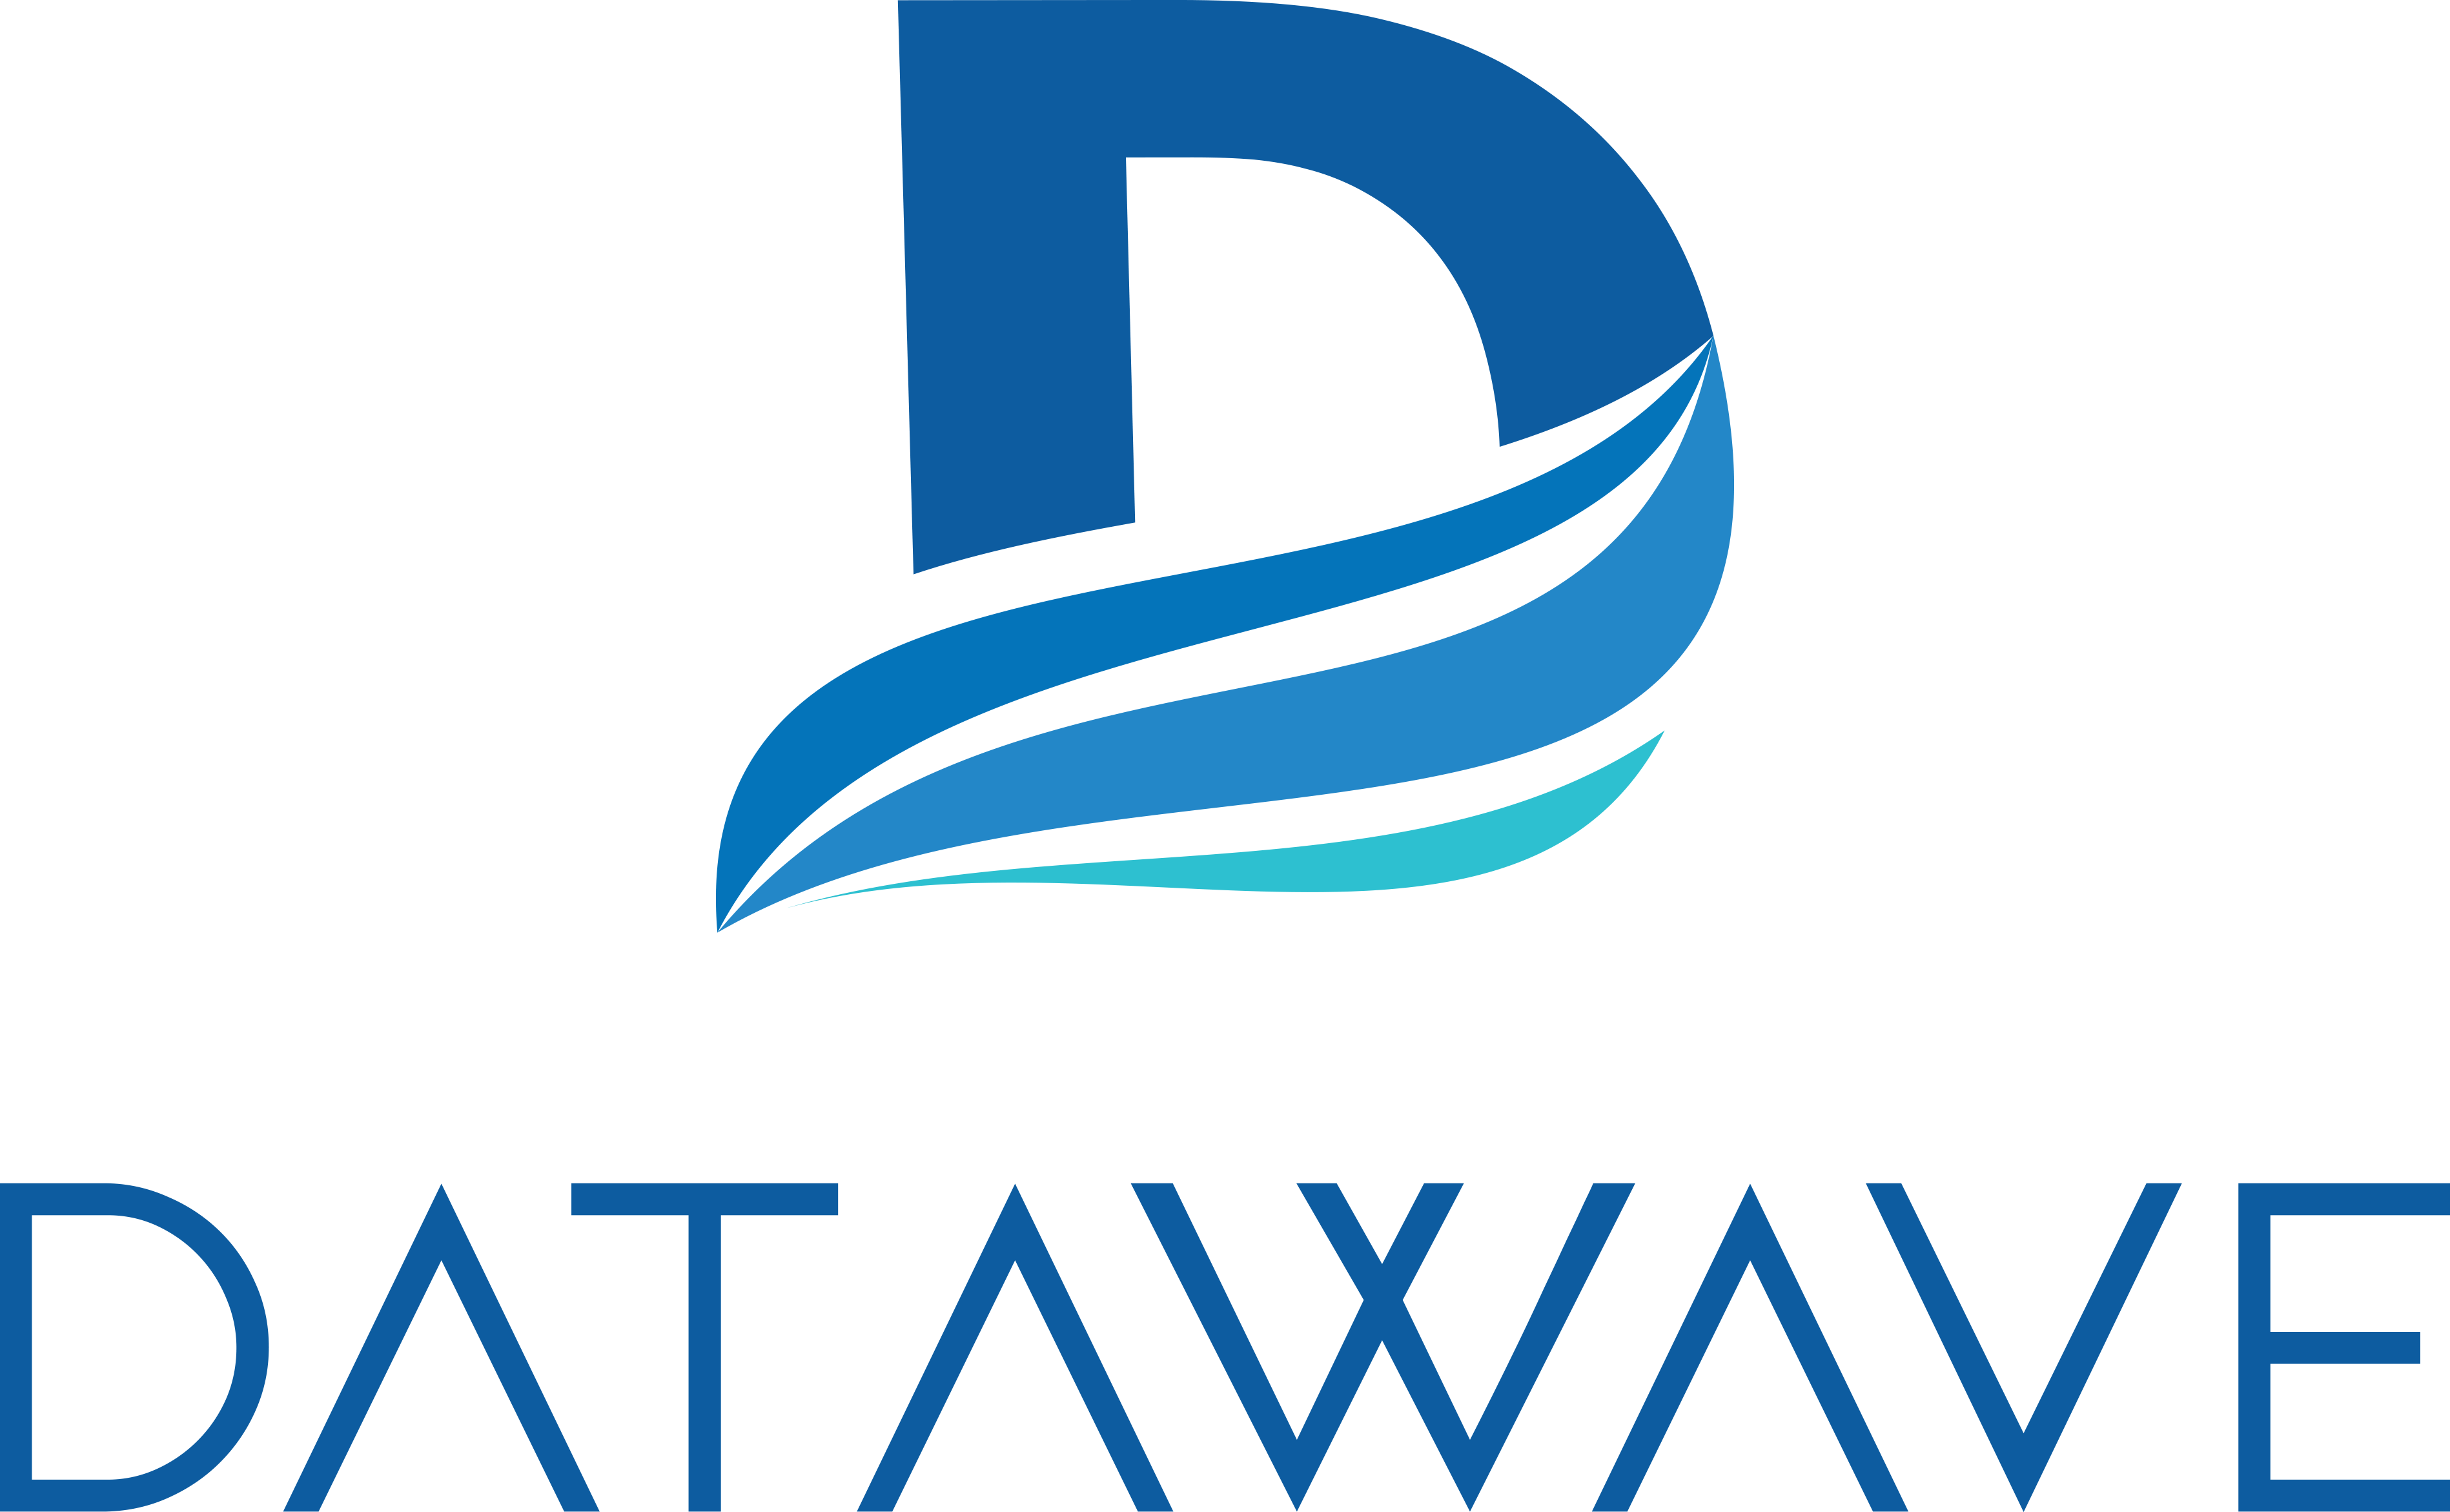 Datawave Wireless